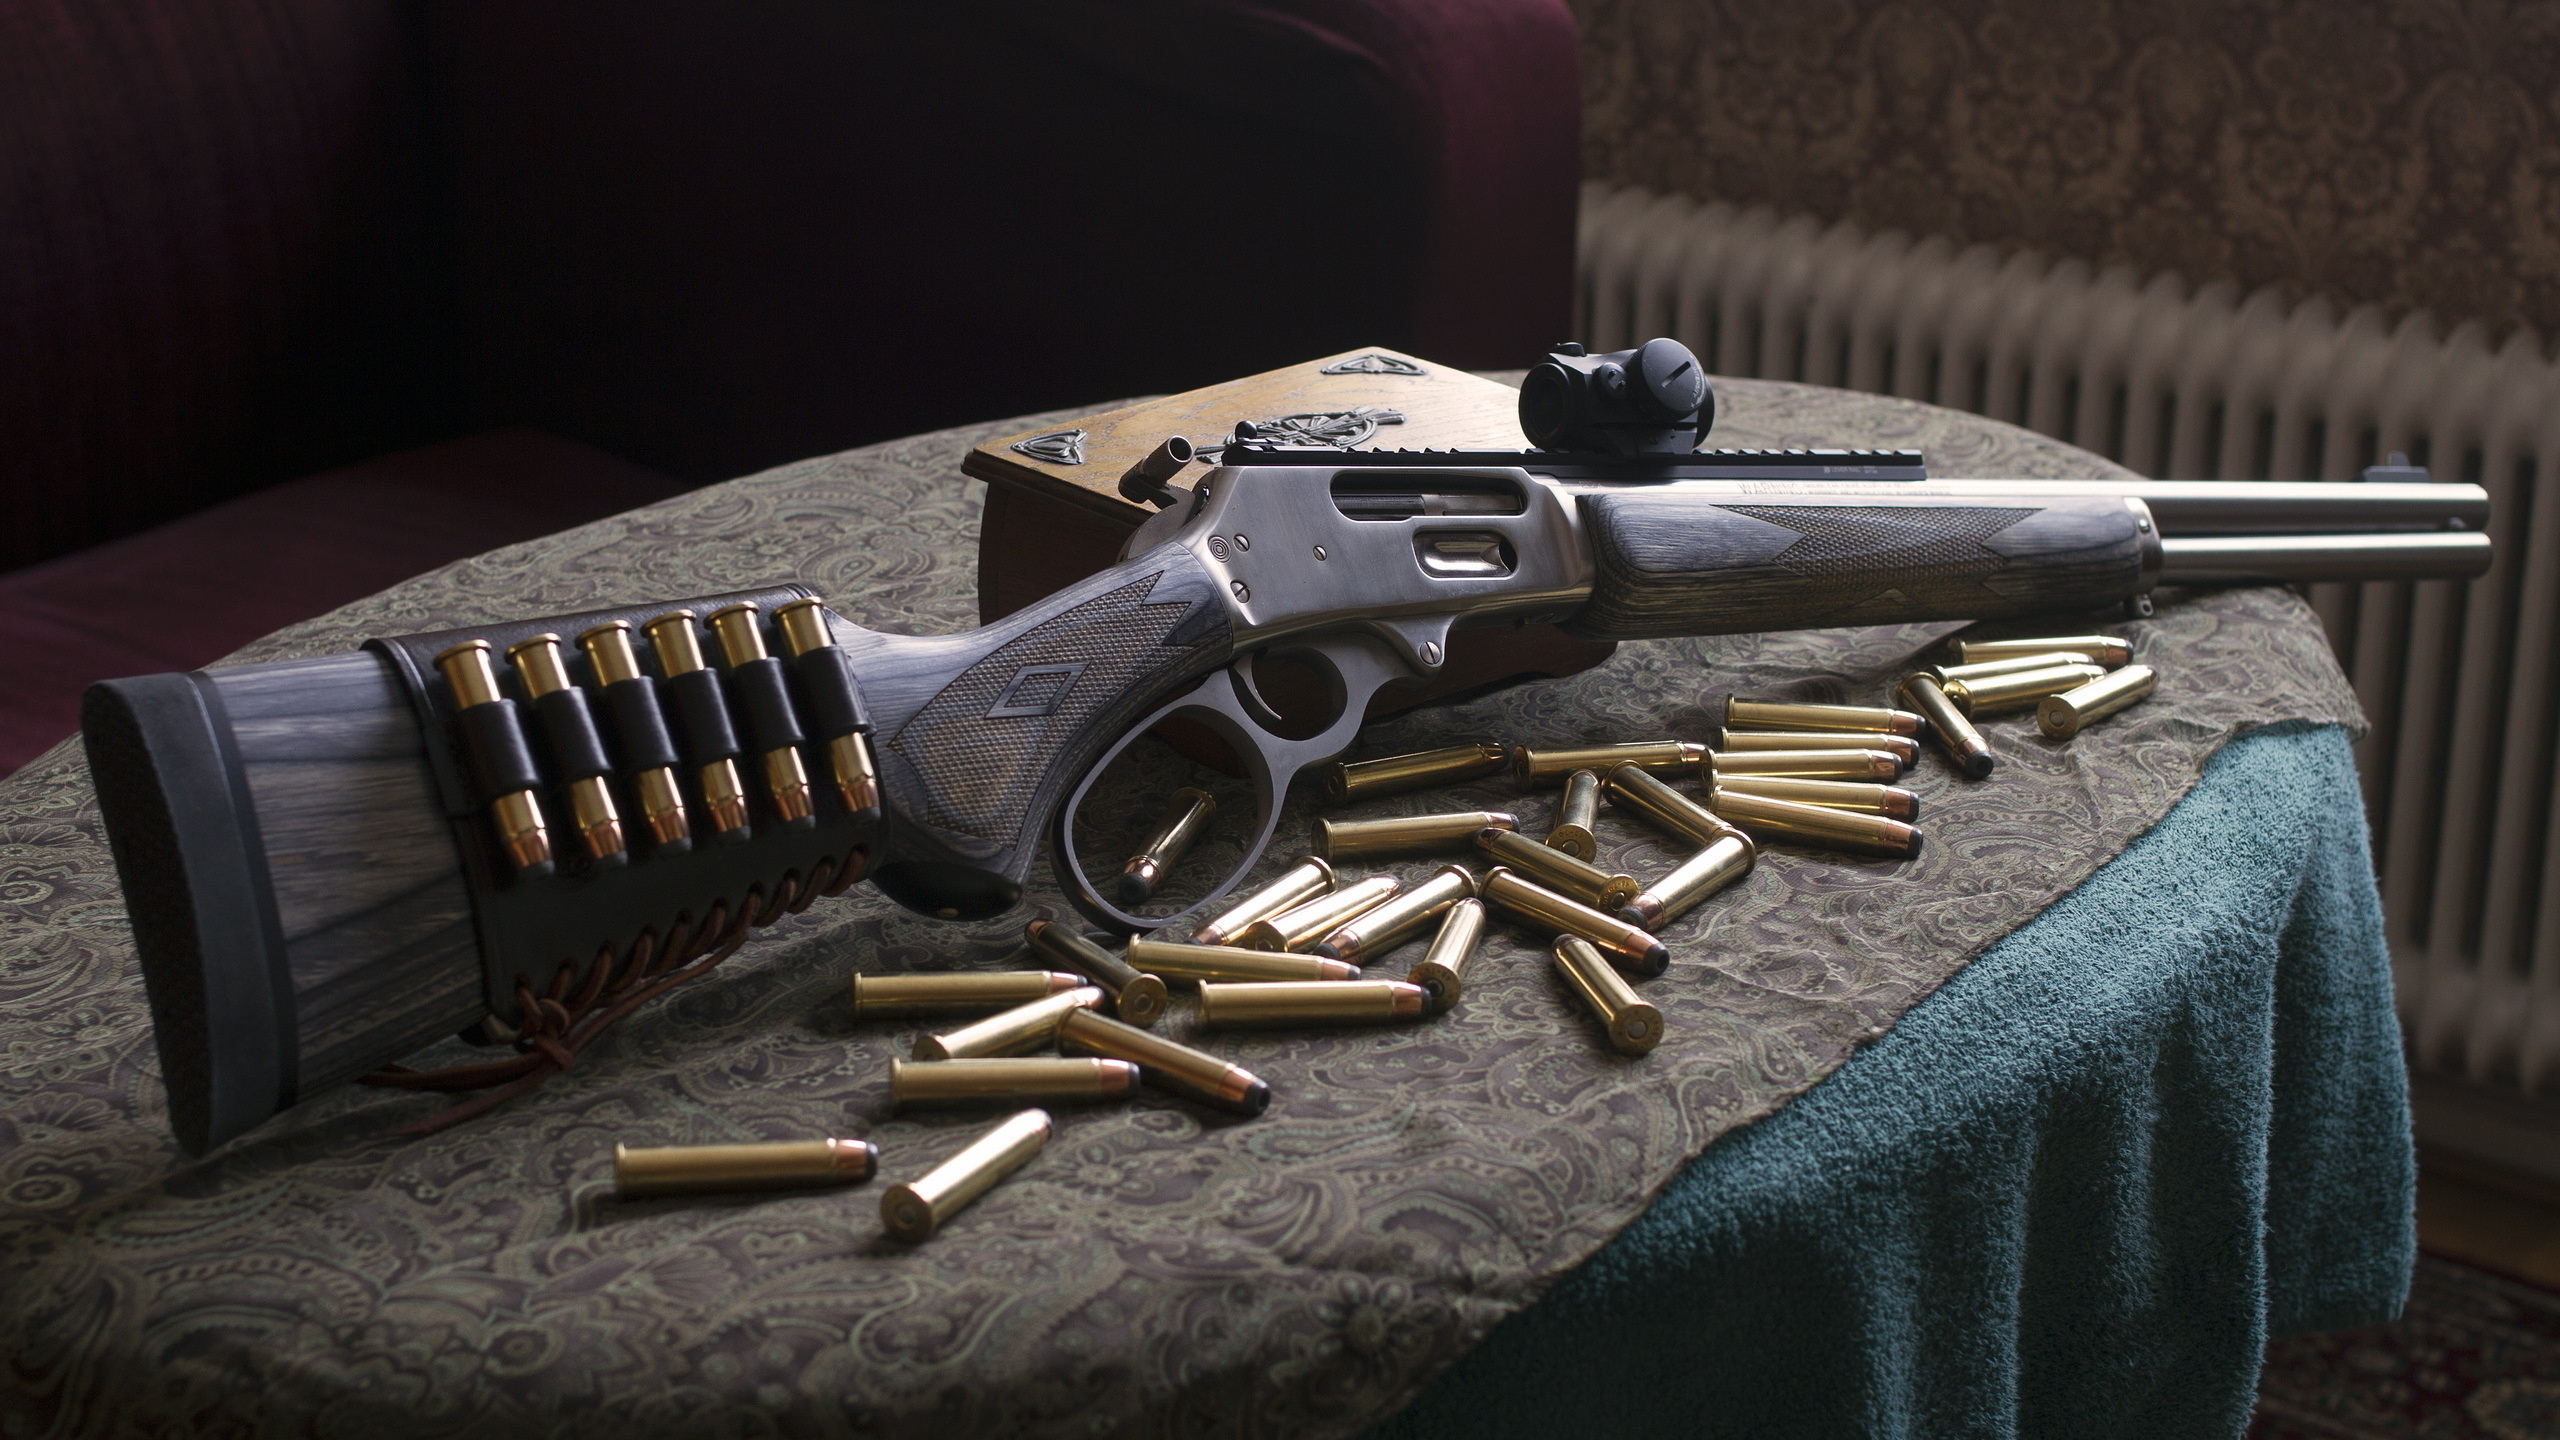 Feuerwaffe, Trigger, Gun Barrel, Luftgewehr, Revolver. Wallpaper in 2560x1440 Resolution